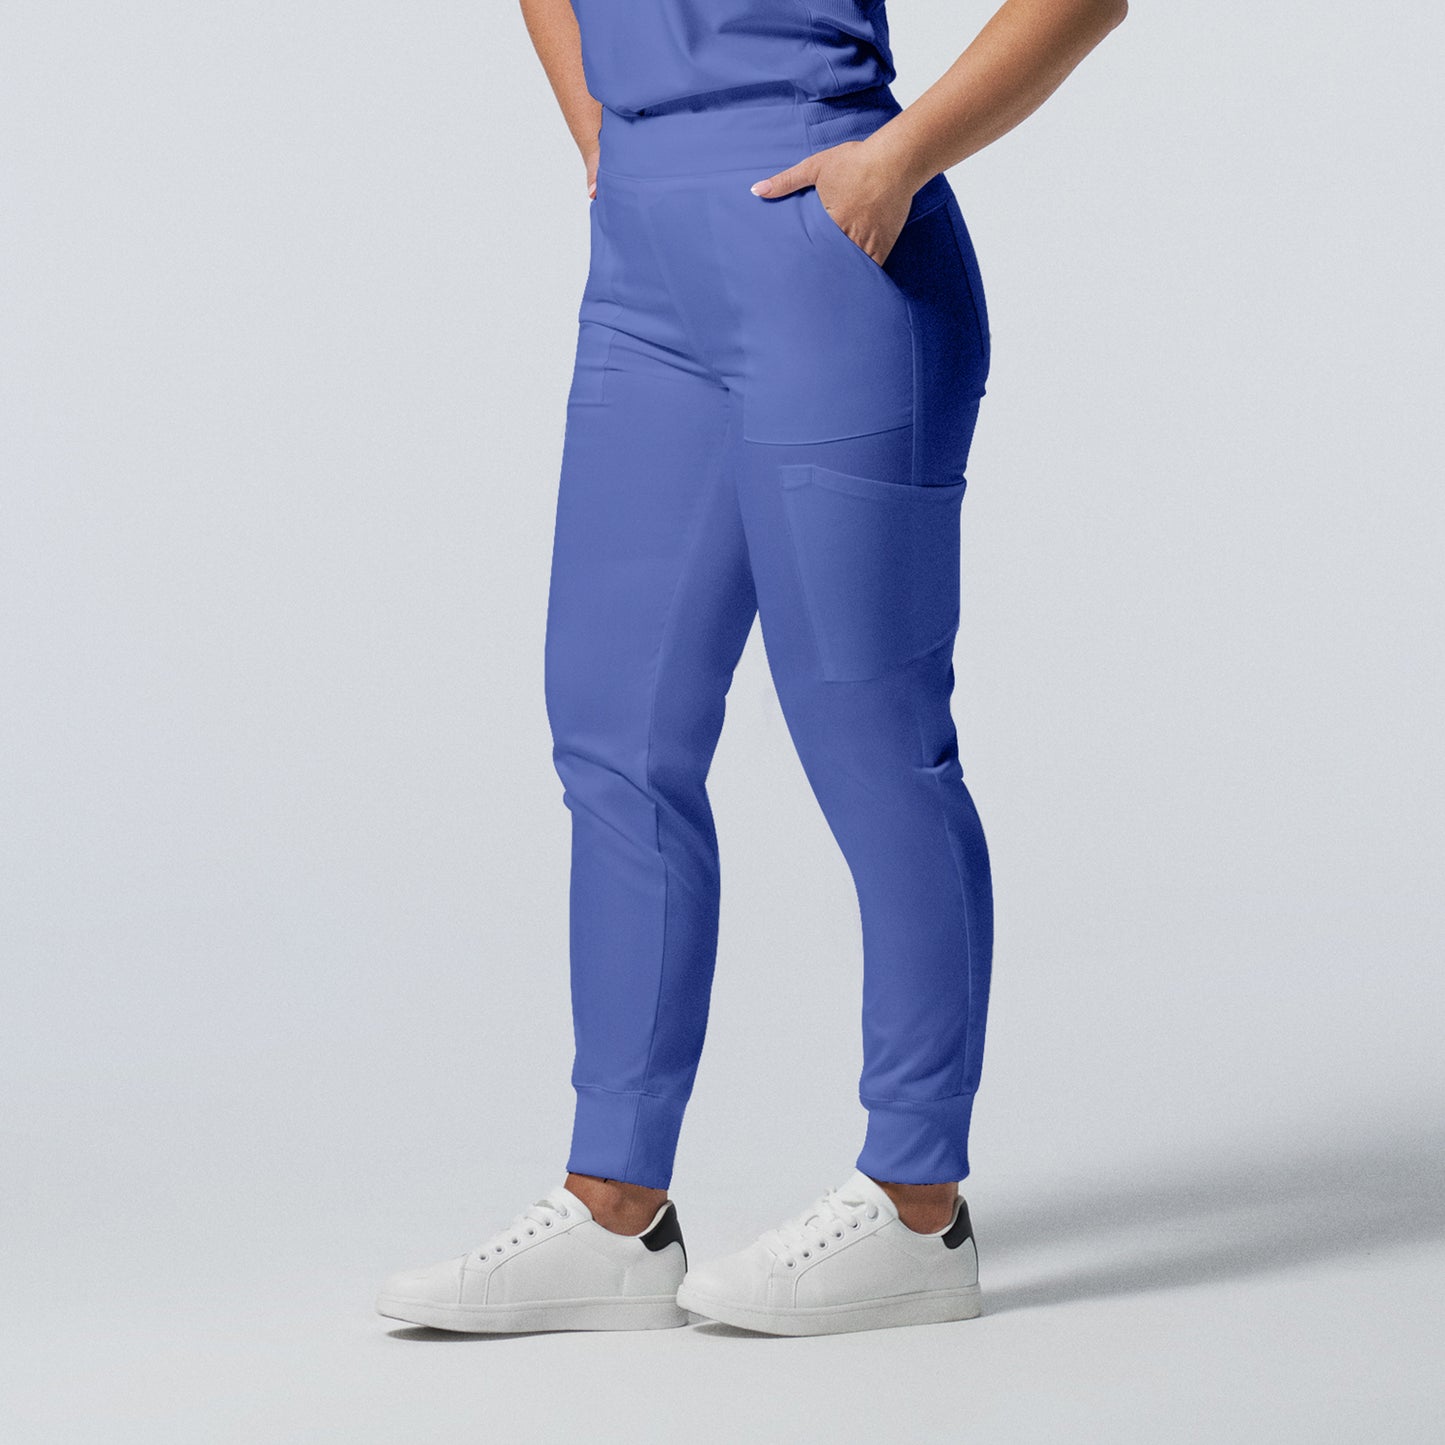 Women's jogger pants - PROFLEX - L406T tall